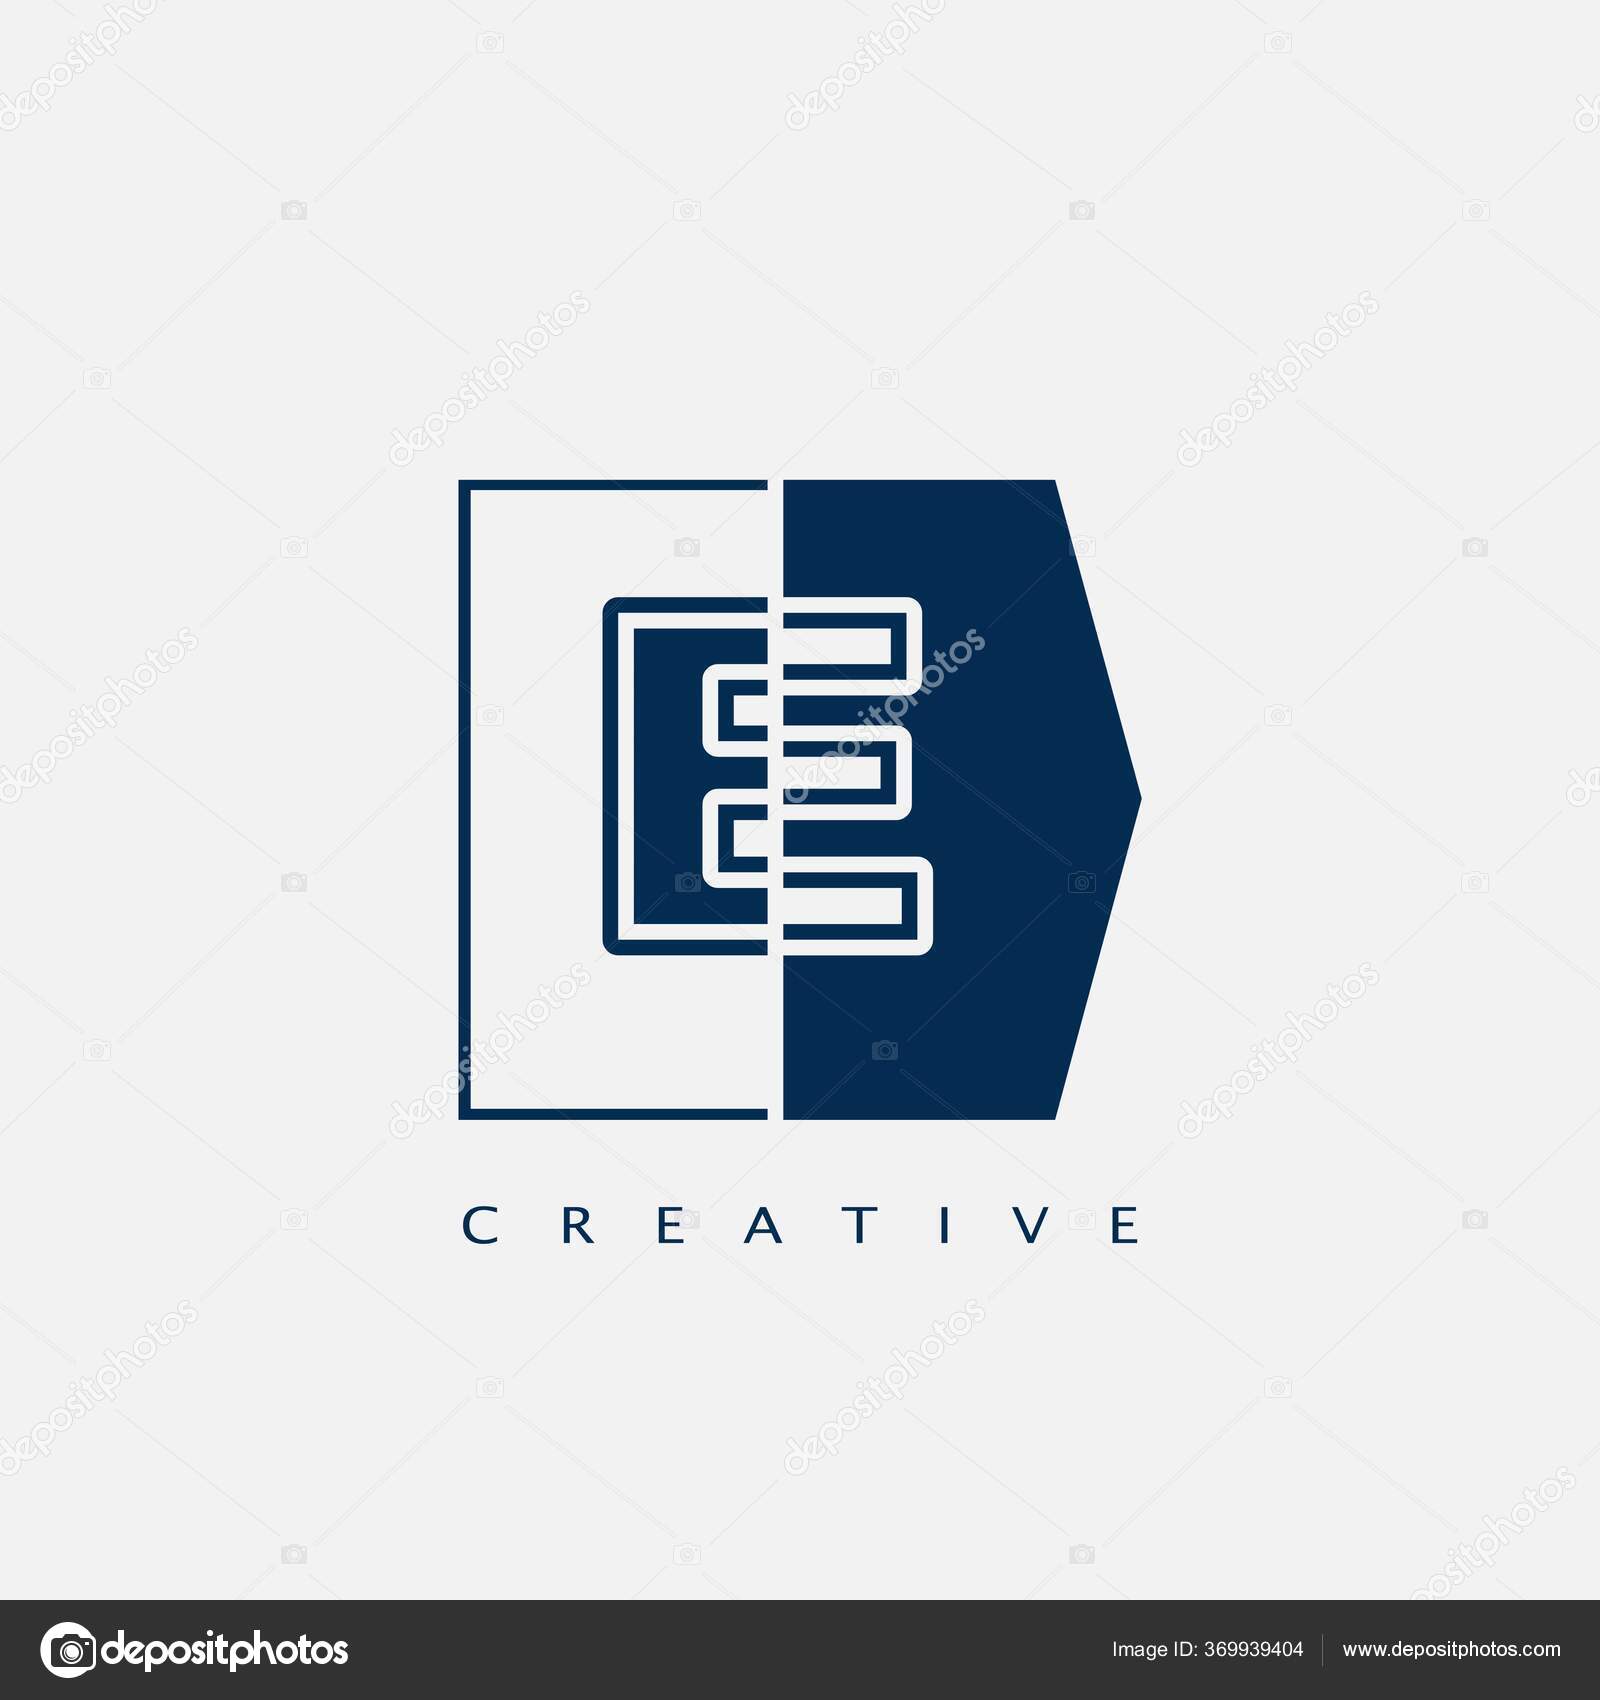 https://st3.depositphotos.com/33106018/36993/v/1600/depositphotos_369939404-stock-illustration-modern-letter-logo-vector-design.jpg